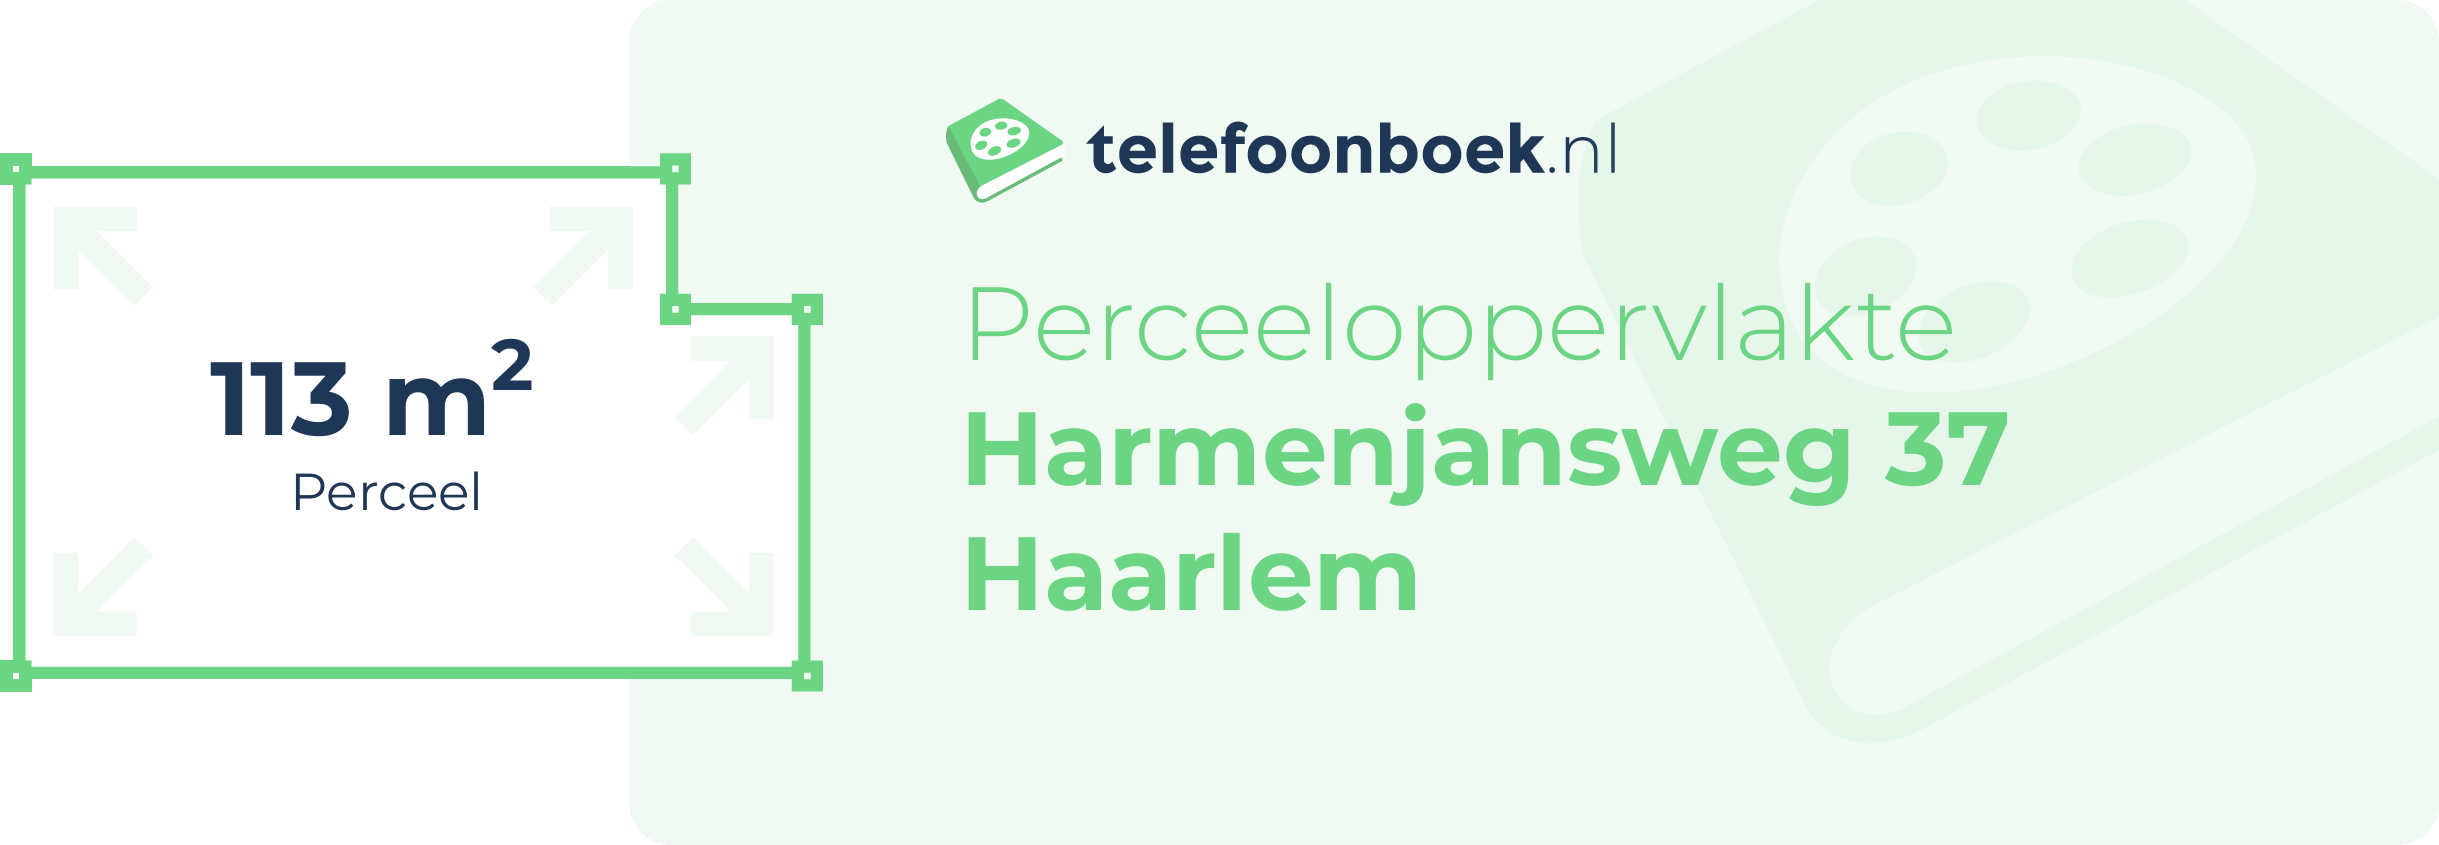 Perceeloppervlakte Harmenjansweg 37 Haarlem